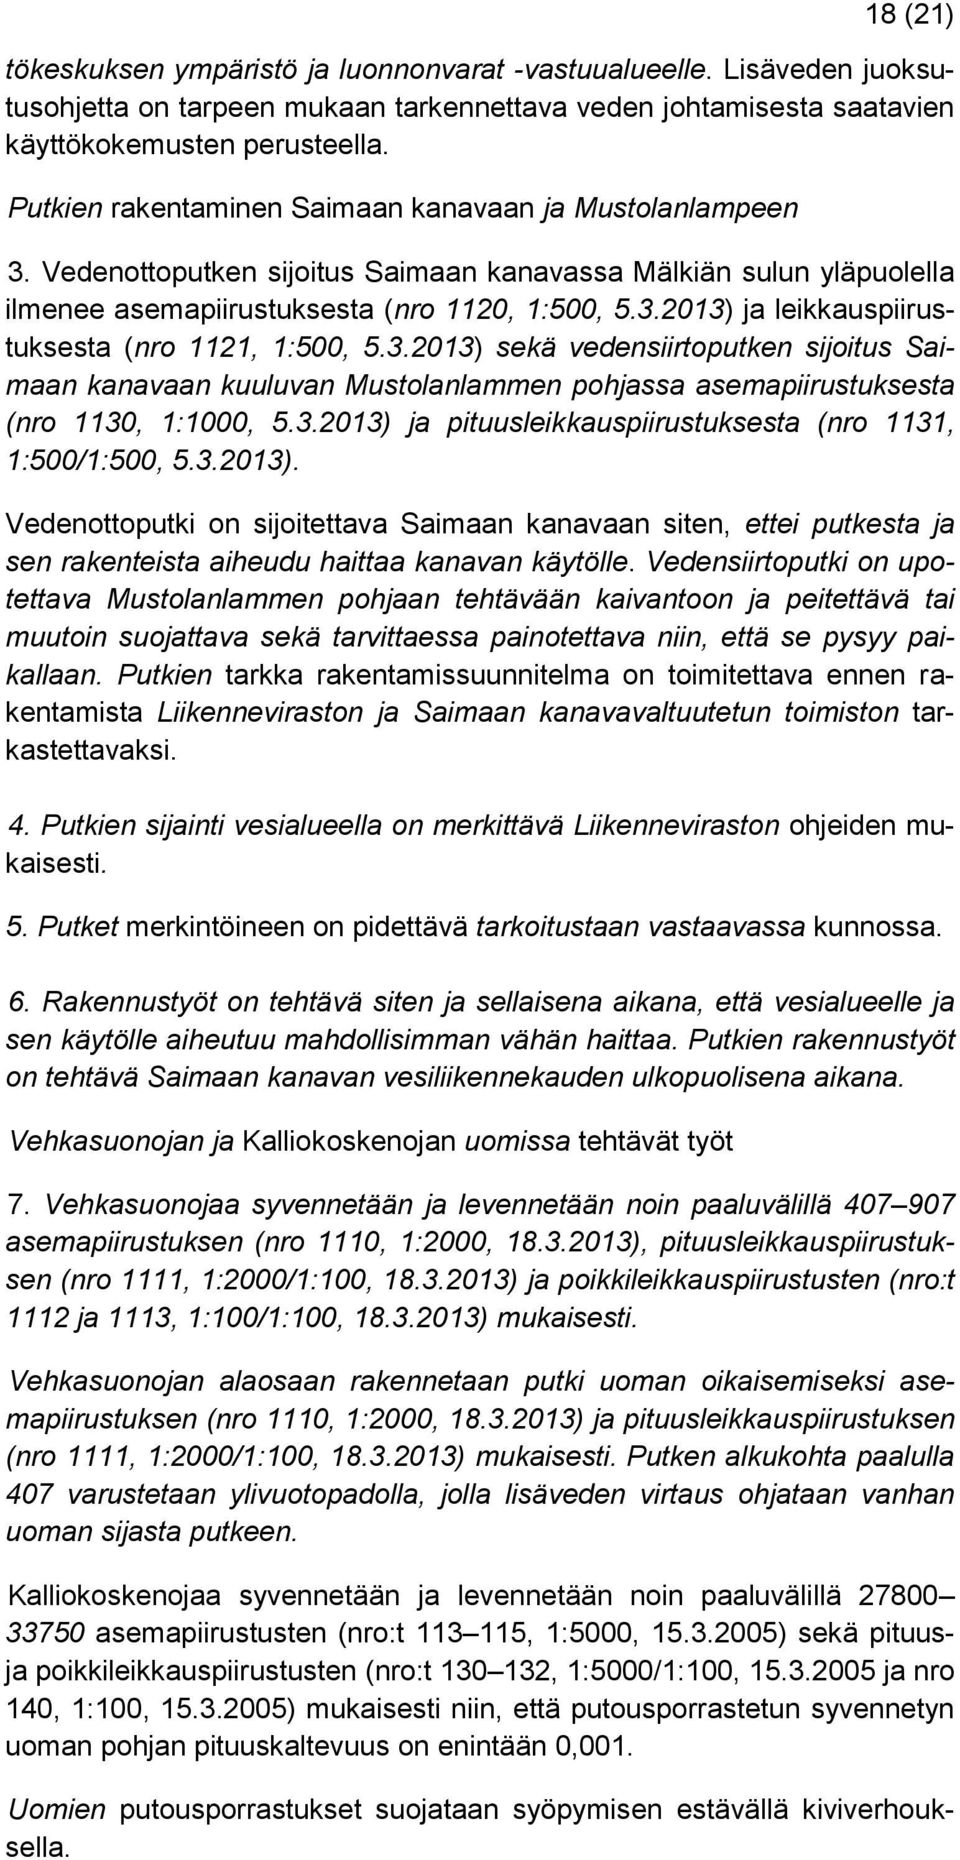 3.2013) sekä vedensiirtoputken sijoitus Saimaan kanavaan kuuluvan Mustolanlammen pohjassa asemapiirustuksesta (nro 1130, 1:1000, 5.3.2013) ja pituusleikkauspiirustuksesta (nro 1131, 1:500/1:500, 5.3.2013). Vedenottoputki on sijoitettava Saimaan kanavaan siten, ettei putkesta ja sen rakenteista aiheudu haittaa kanavan käytölle.